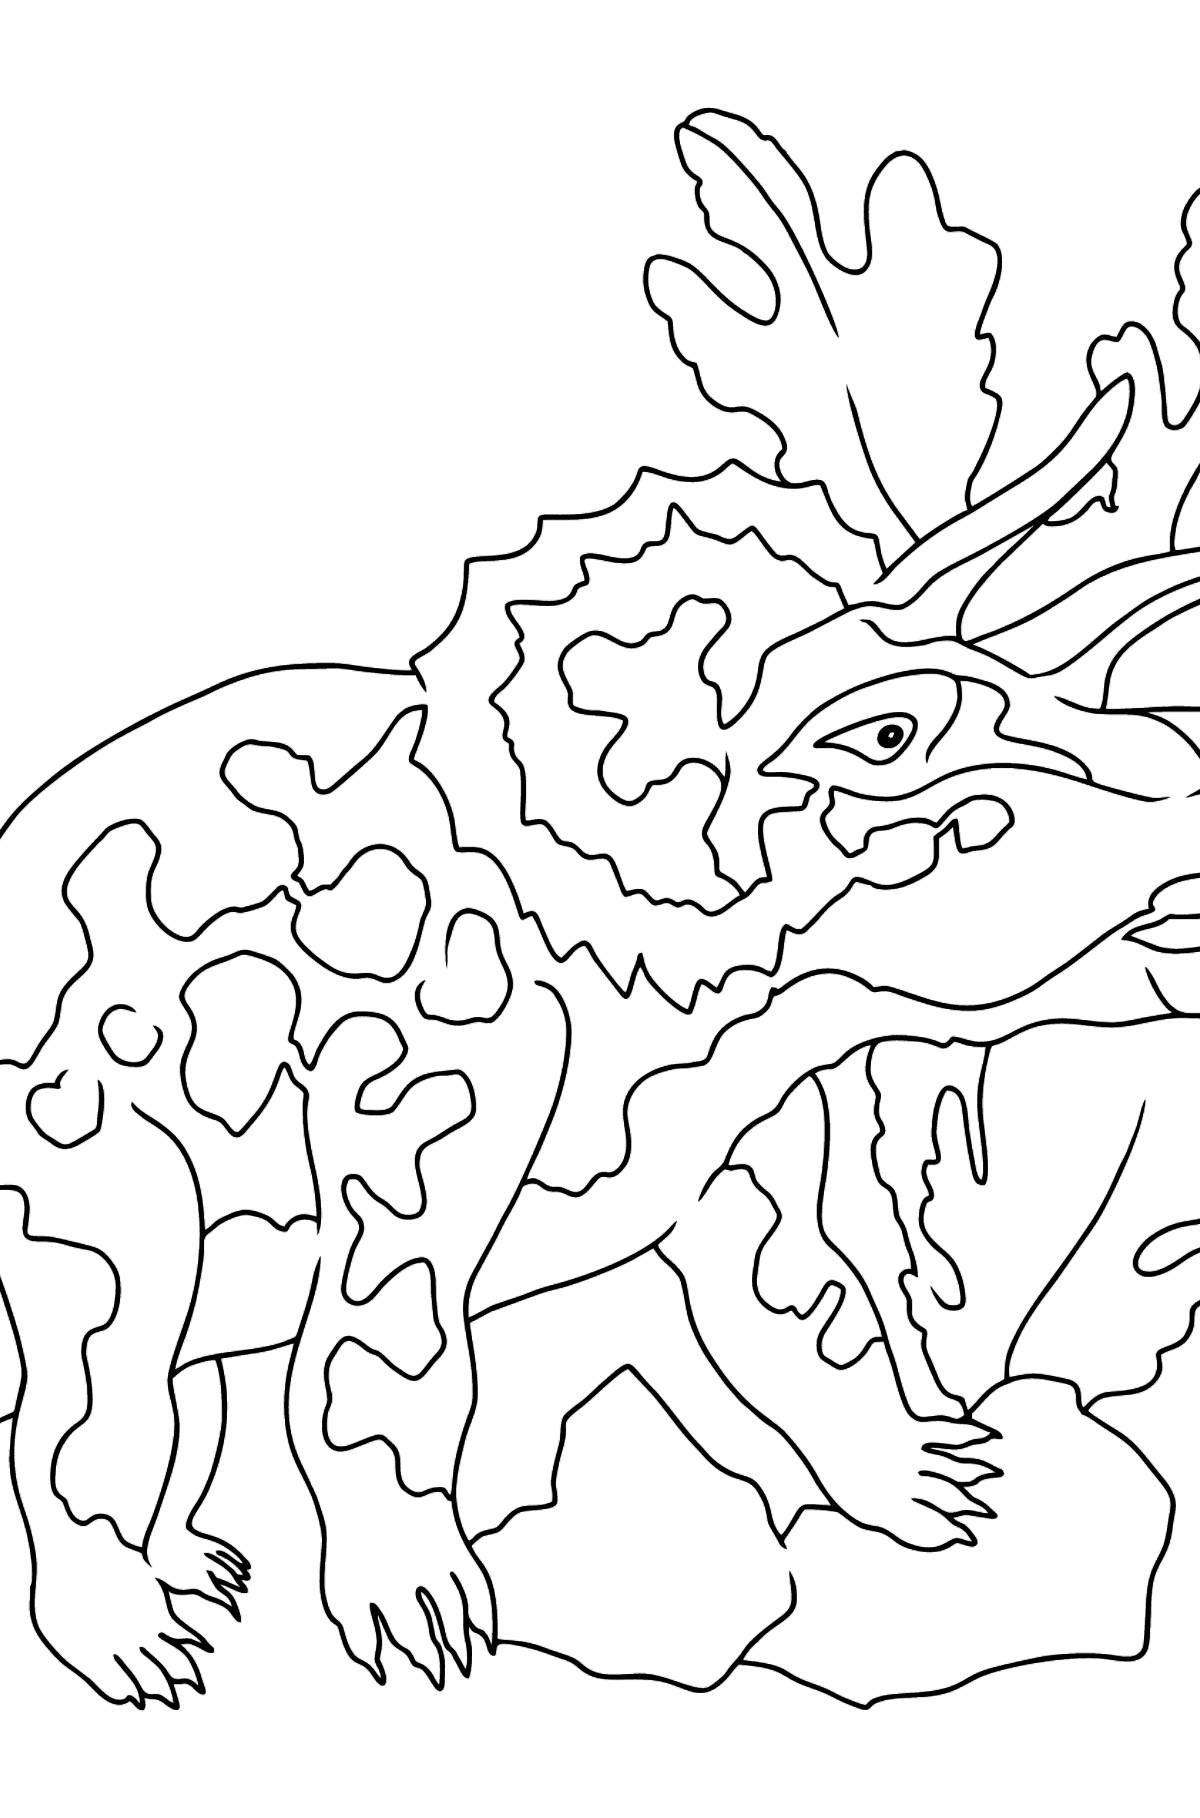 Triceratopo da colorare per i più piccoli - Disegni da colorare per bambini